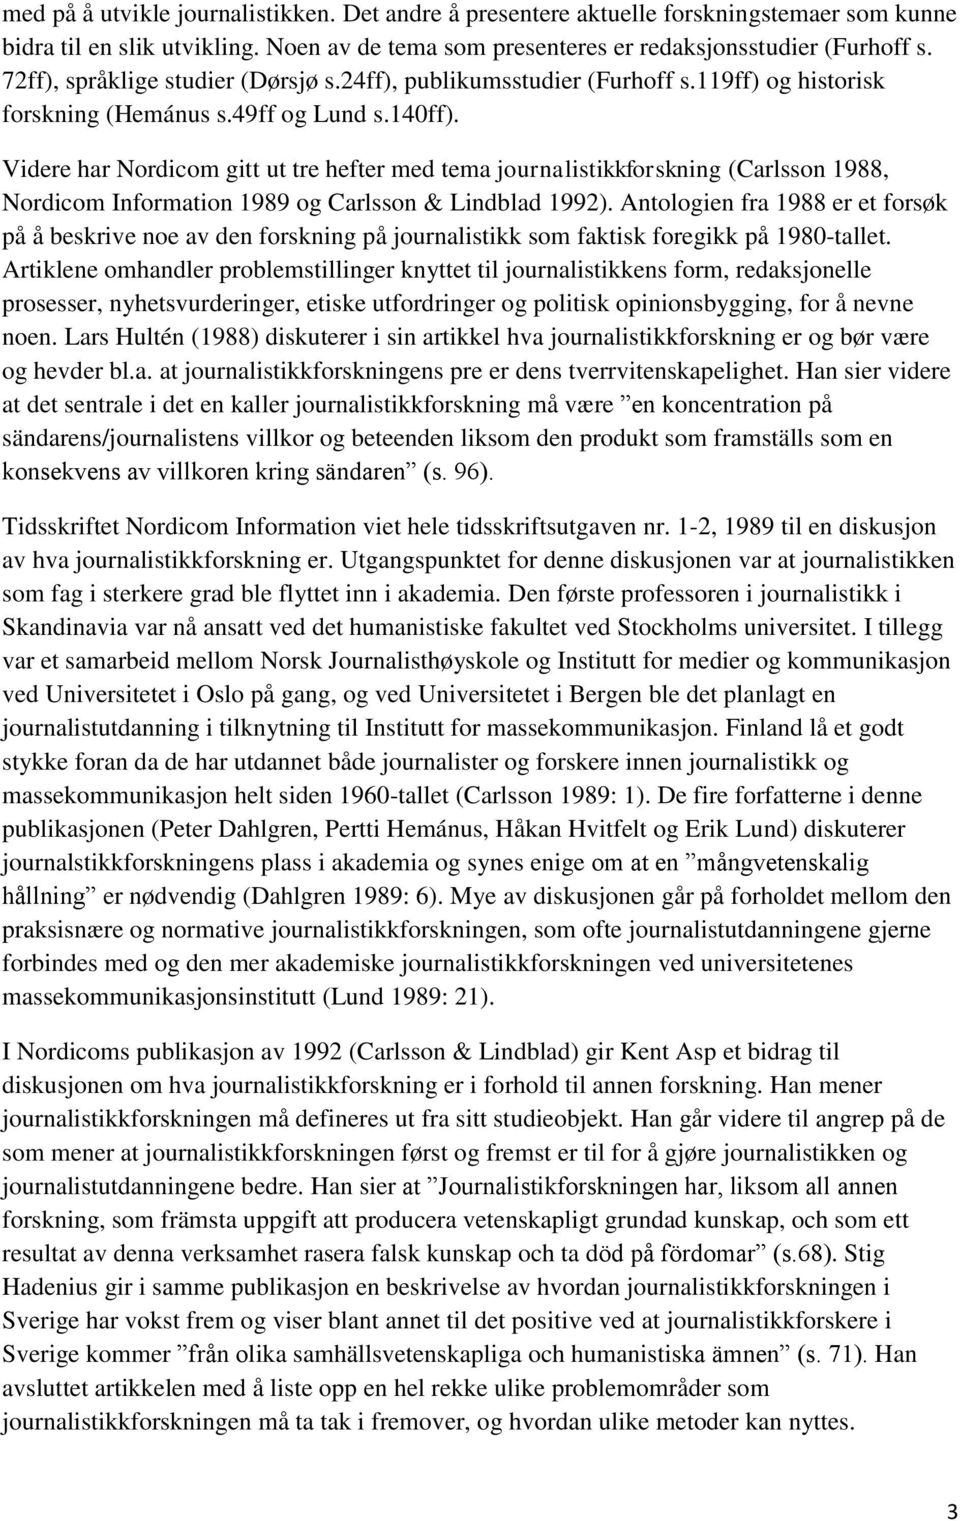 Videre har Nordicom gitt ut tre hefter med tema journalistikkforskning (Carlsson 1988, Nordicom Information 1989 og Carlsson & Lindblad 1992).